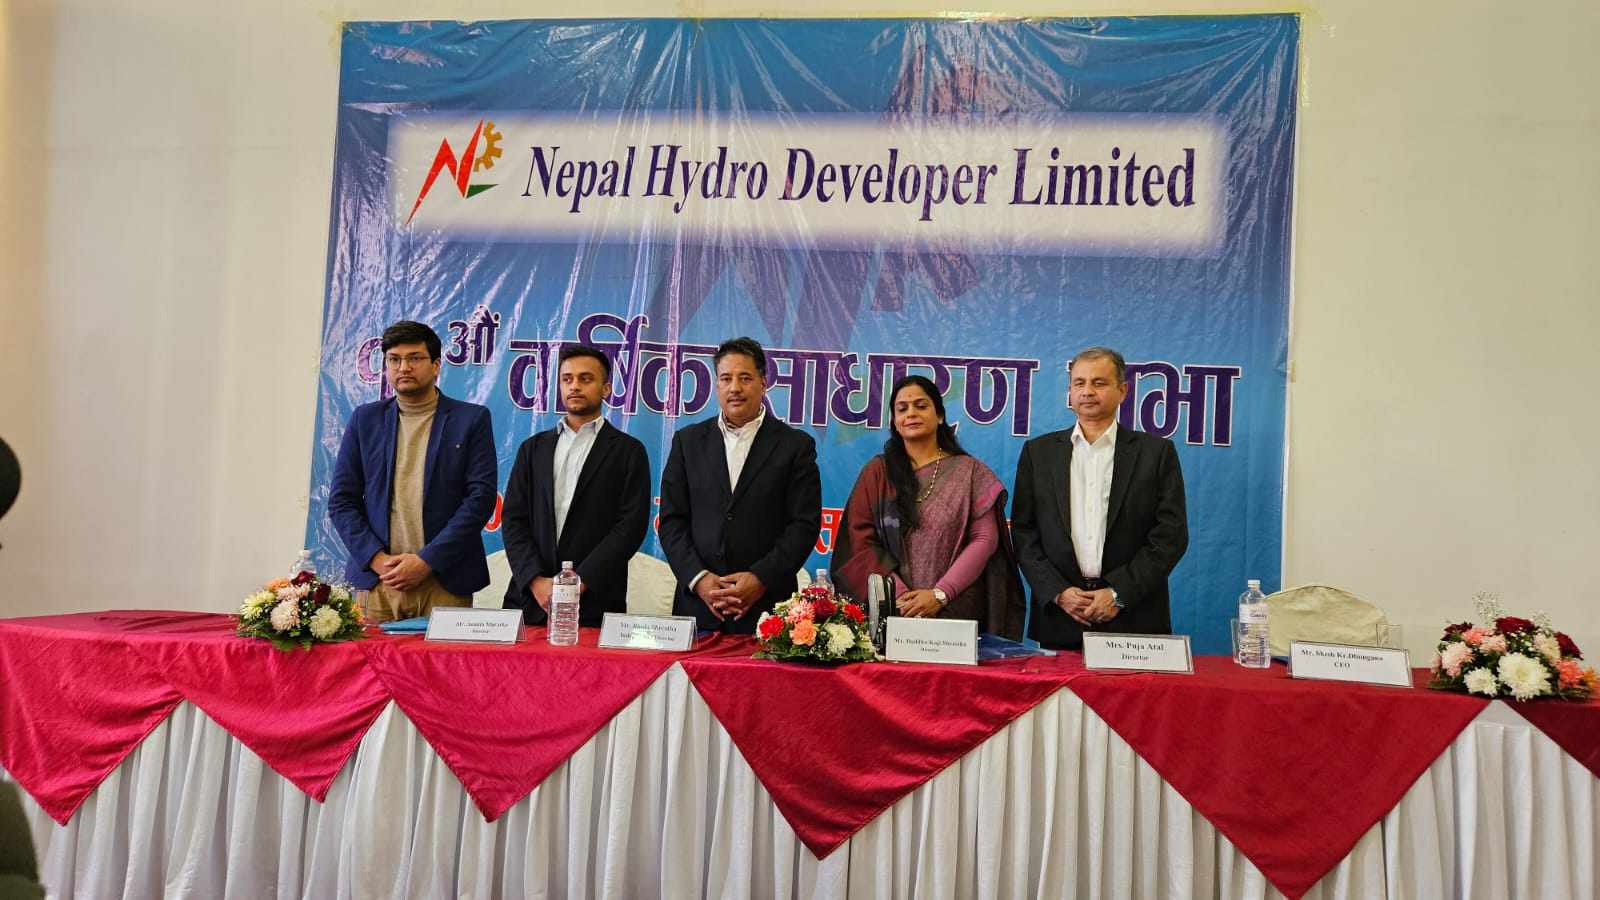 नेपाल हाइड्रो डेभलोपरको वार्षिक साधारण सभा सम्पन्न, प्रस्तावित लाभांश पारित